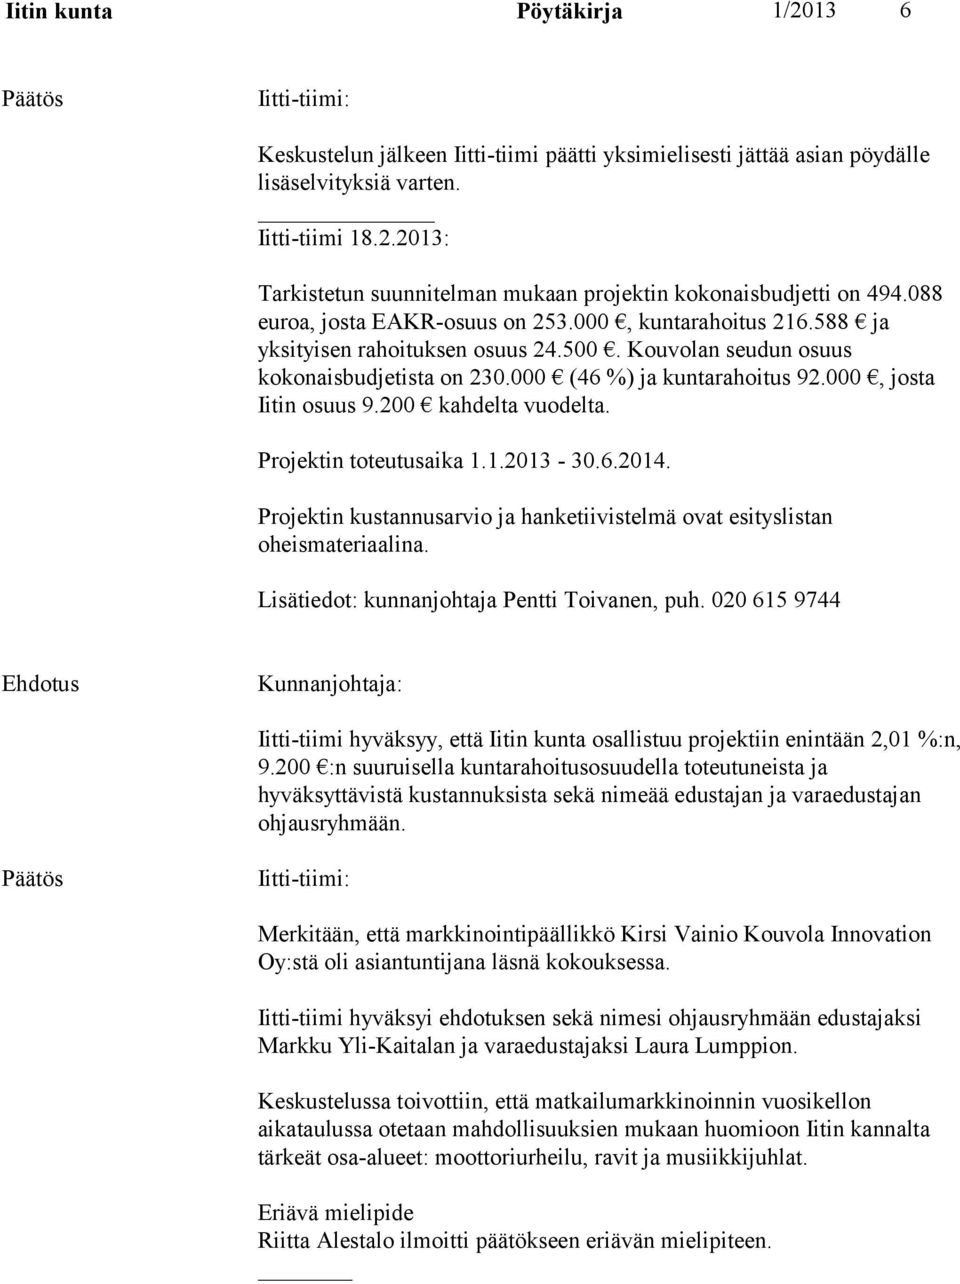 000, josta Iitin osuus 9.200 kahdelta vuodelta. Projektin toteutusaika 1.1.2013-30.6.2014. Projektin kustannusarvio ja hanketiivistelmä ovat esityslistan oheismateriaalina.